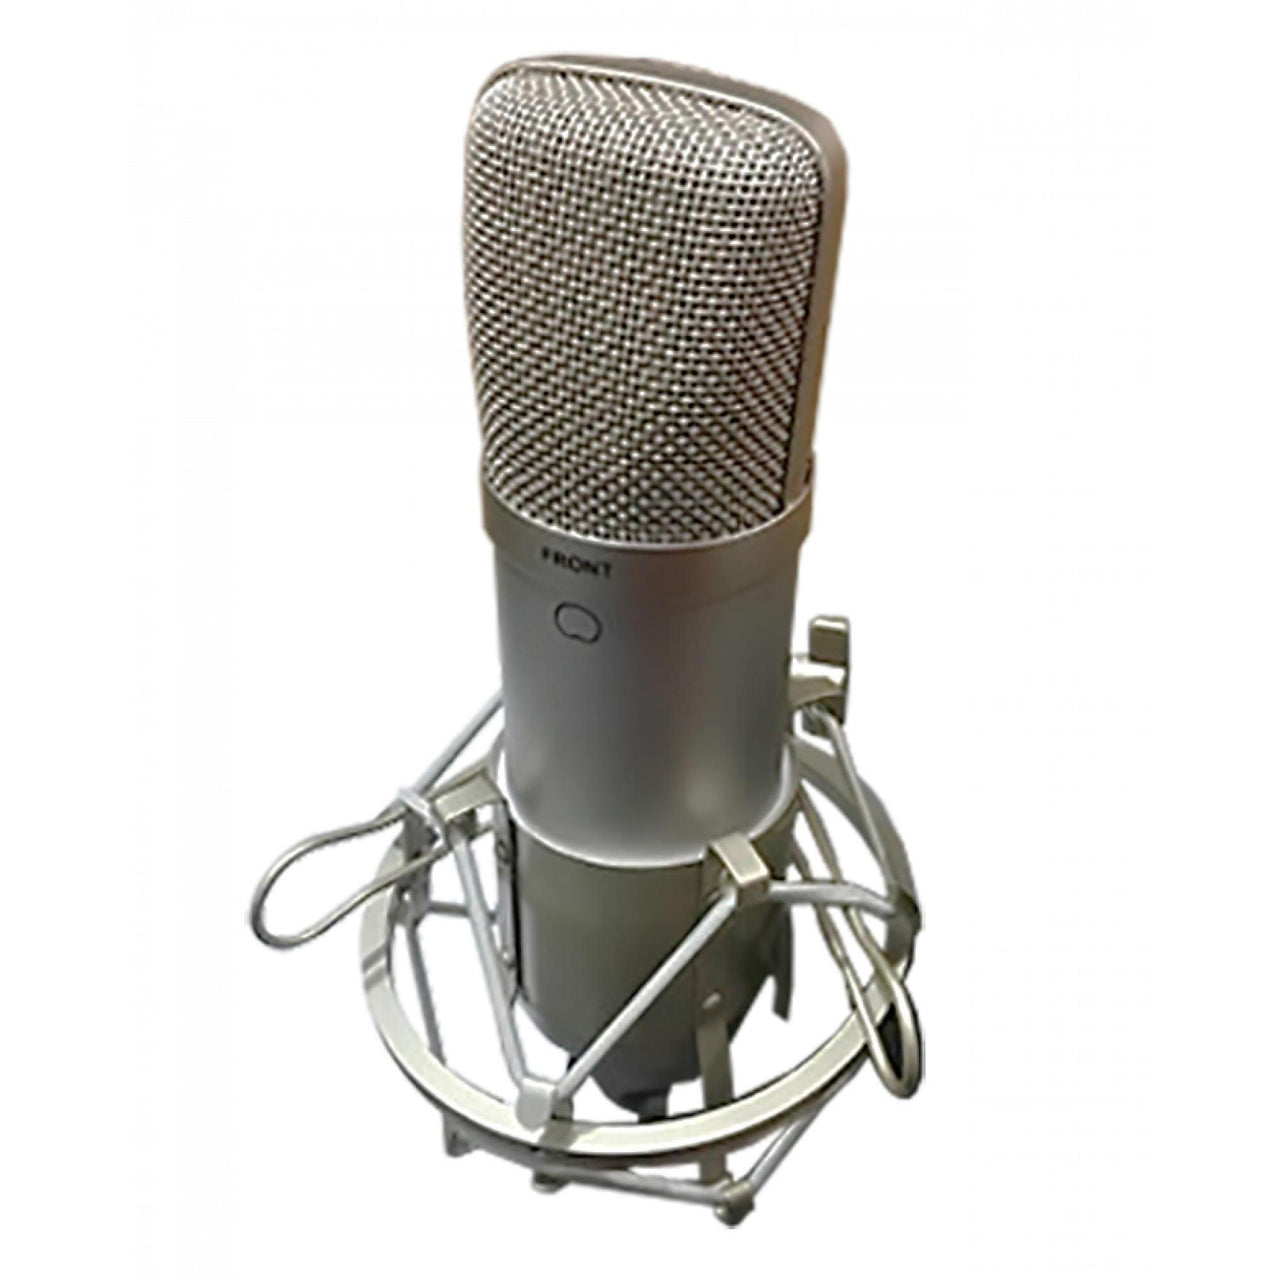 Microfono Krieg De Condensador Uso General C/Soporte Araña, K-C06b